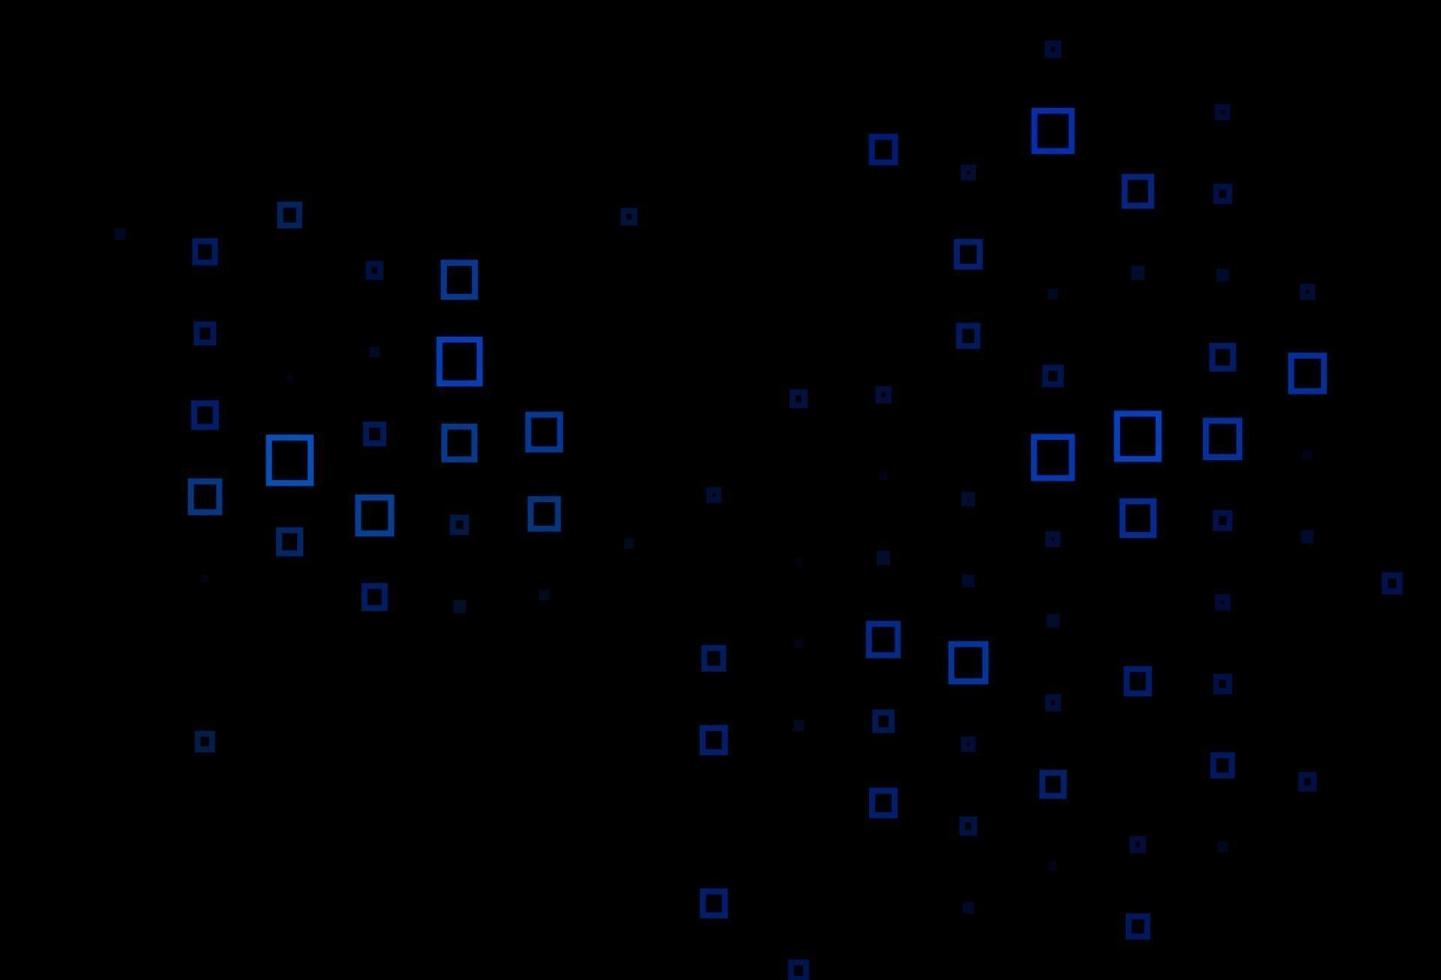 donkerblauwe vectorachtergrond met rechthoeken. vector